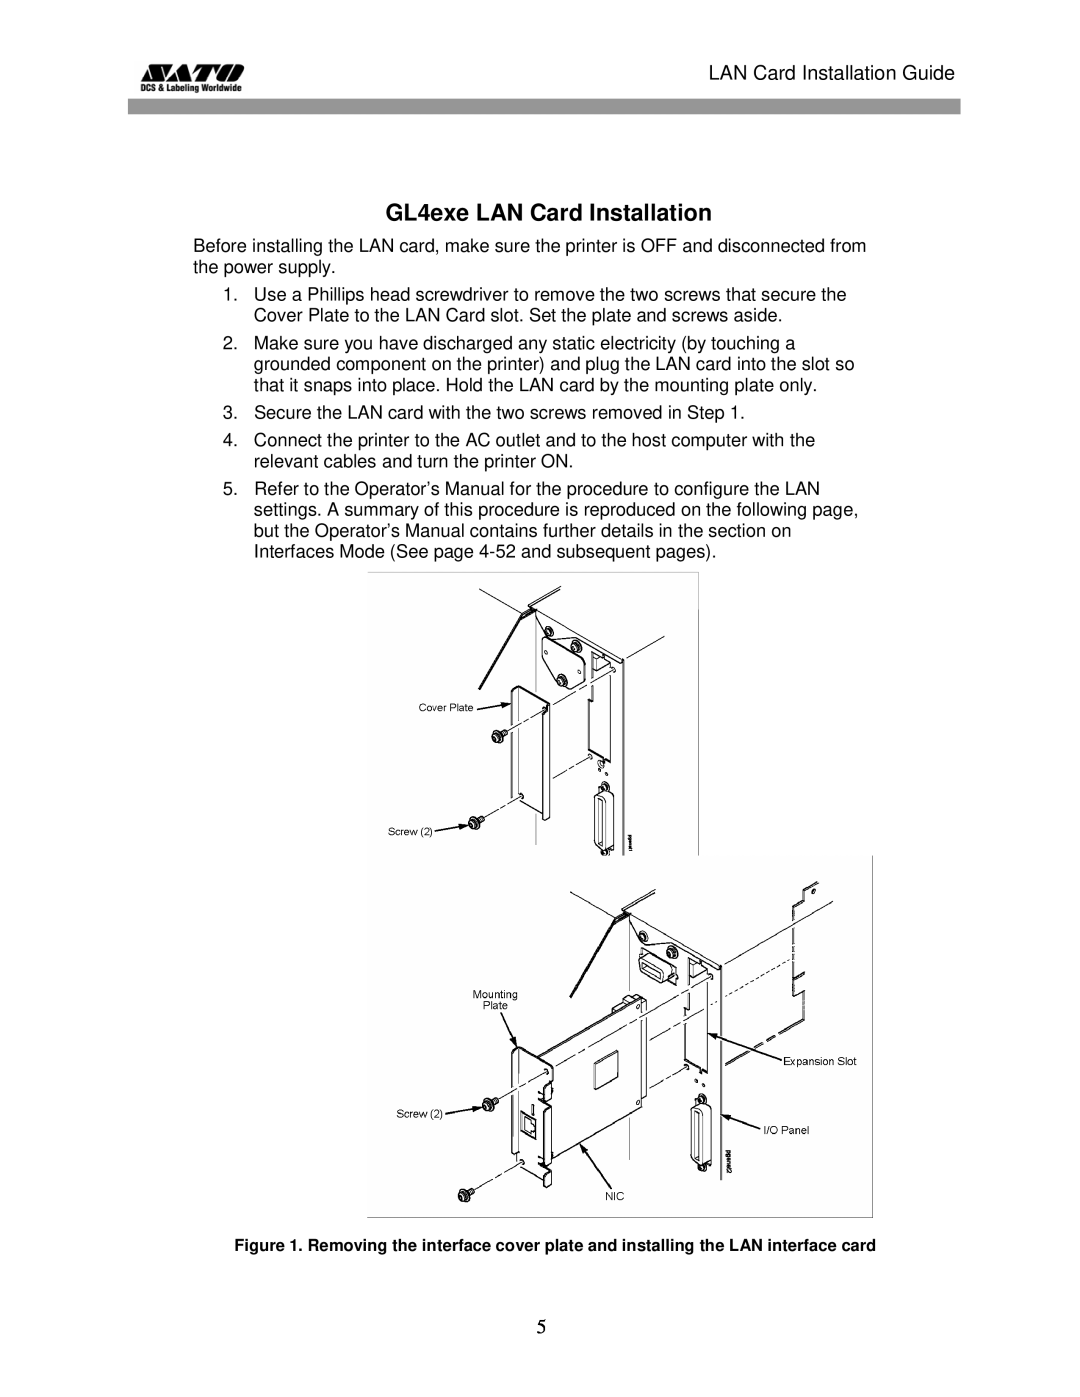 SATO GL 4xxe Series manual GL4exe LAN Card Installation, LAN Card Installation Guide 